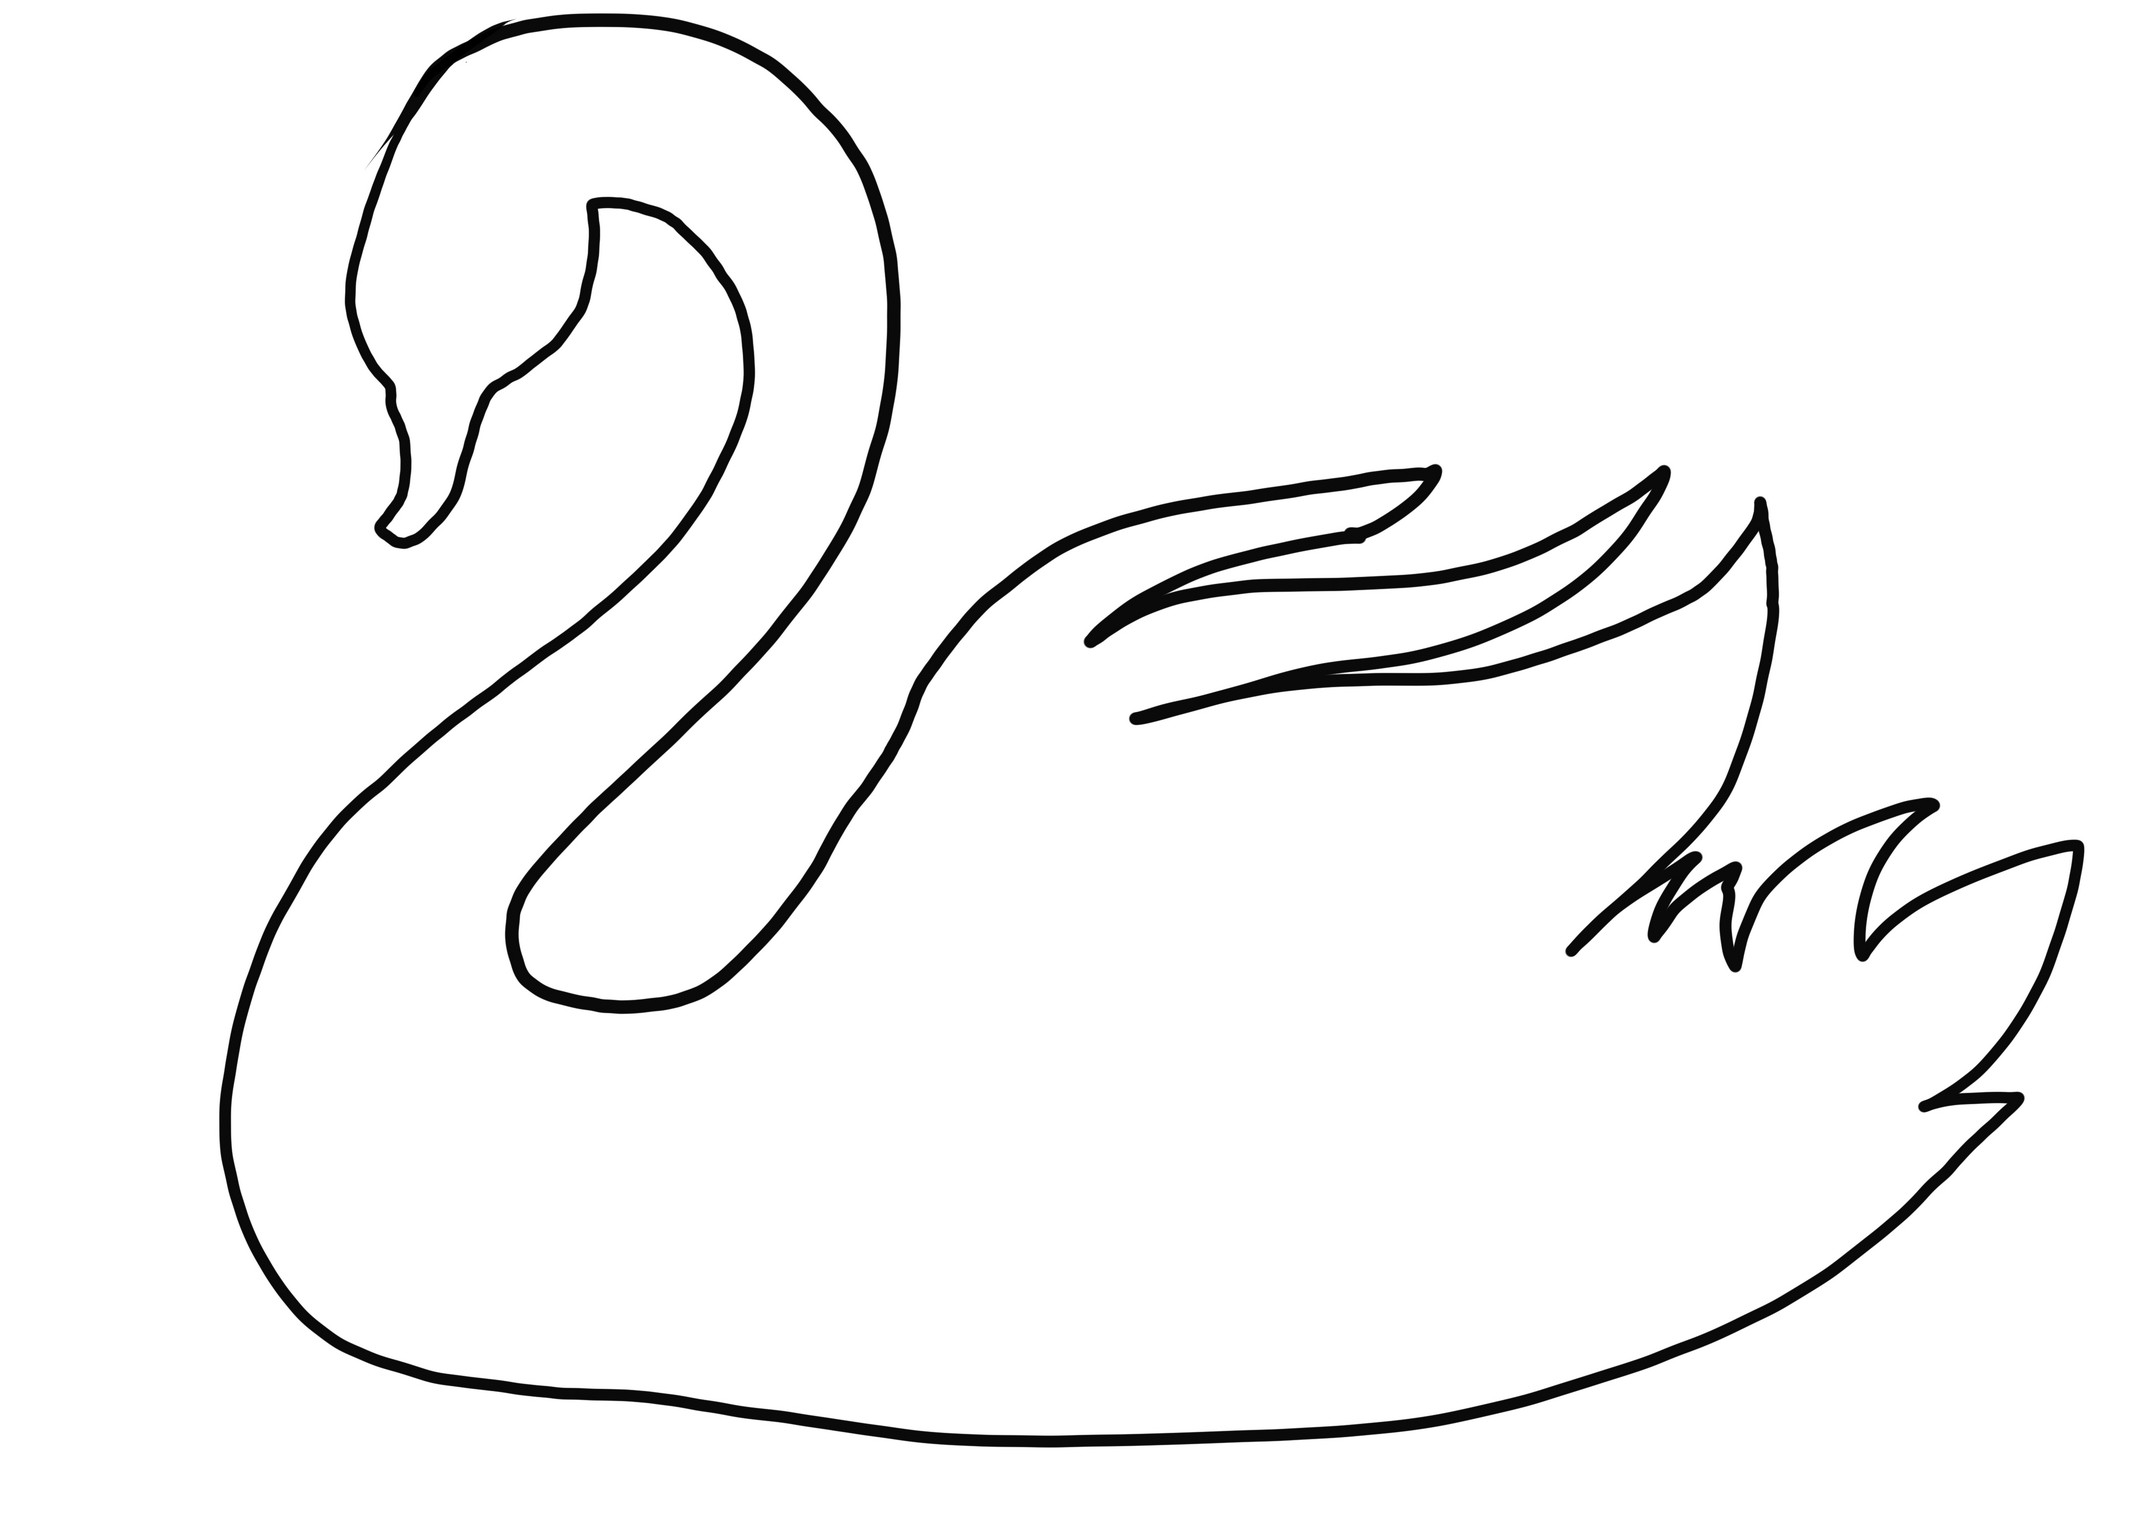 Dibujo de cisne realista para colorear